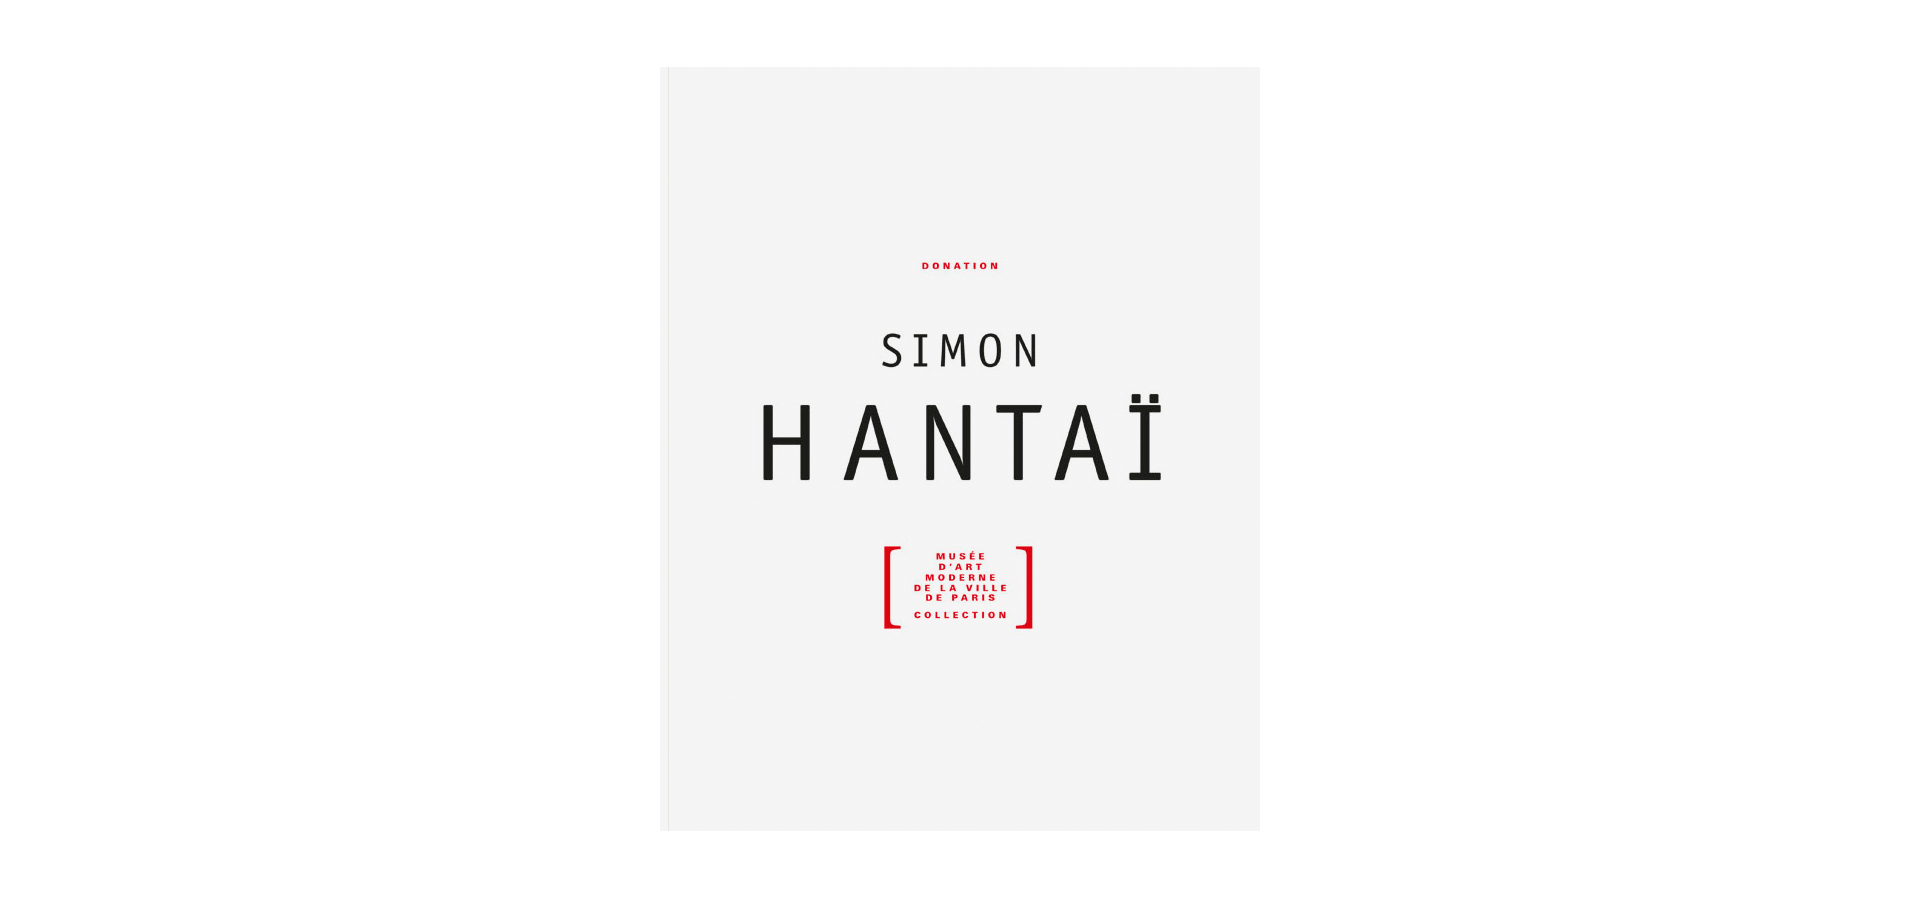 Simon Hantaï